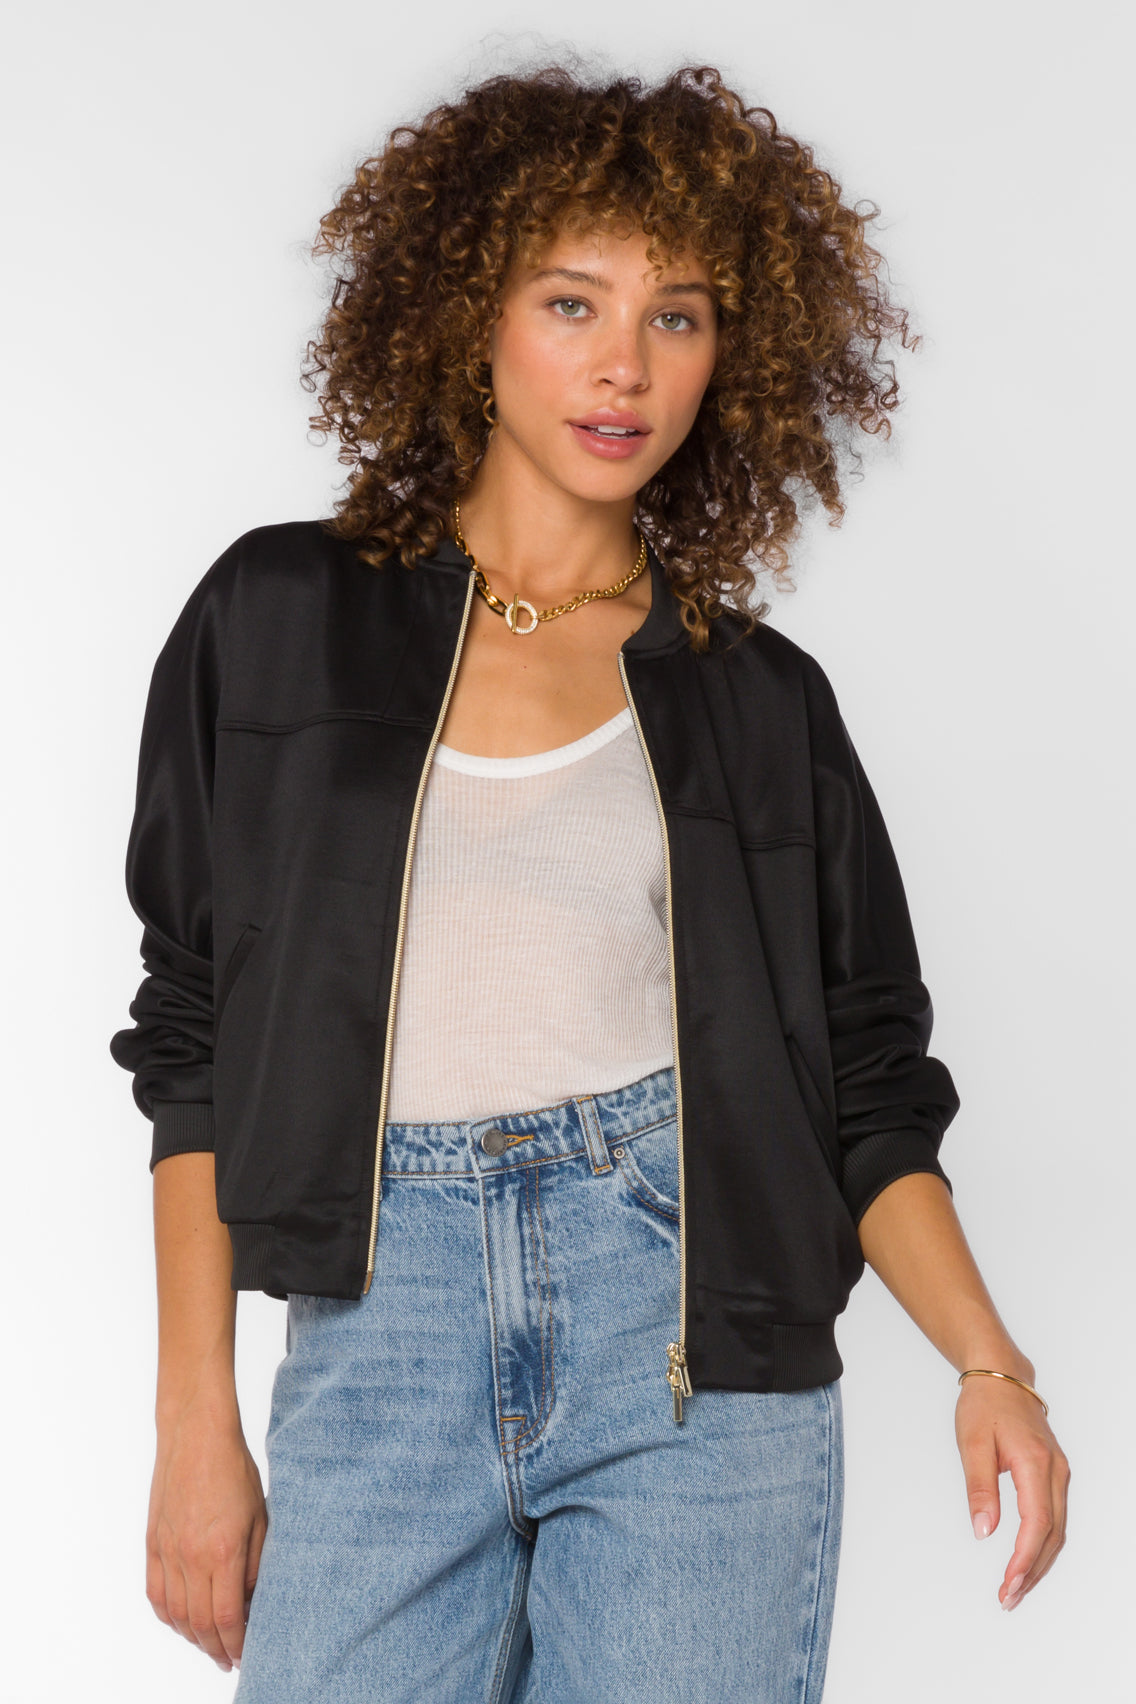 Lusha Black Jacket - Jackets & Outerwear - Velvet Heart Clothing